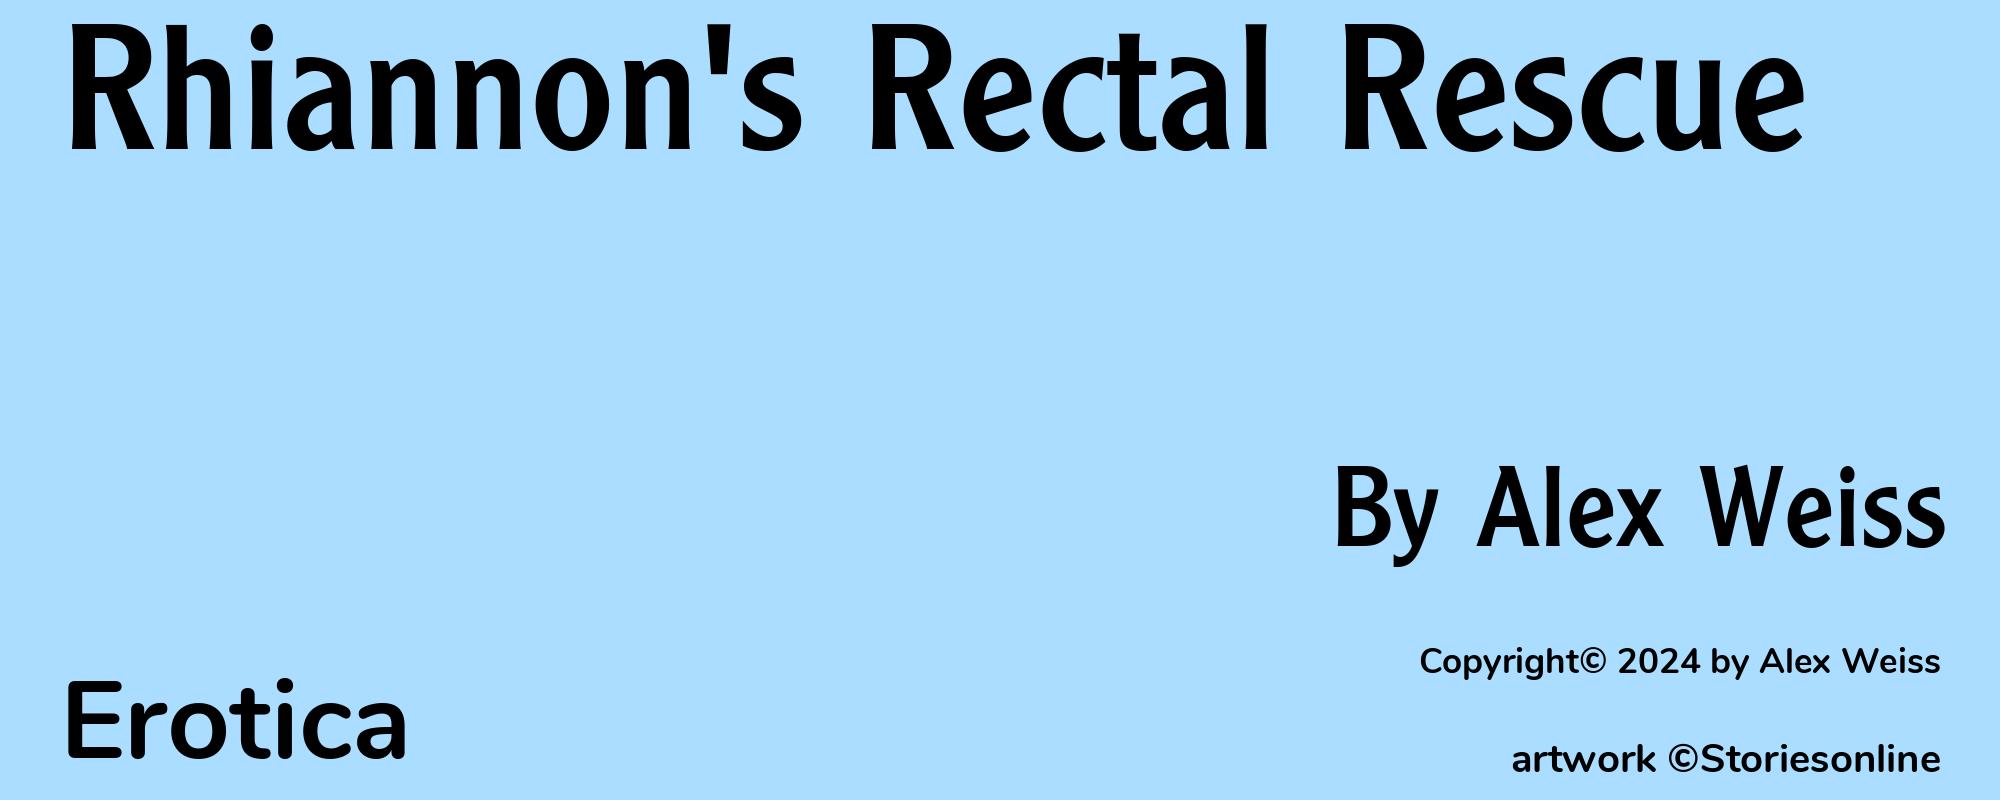 Rhiannon's Rectal Rescue - Cover